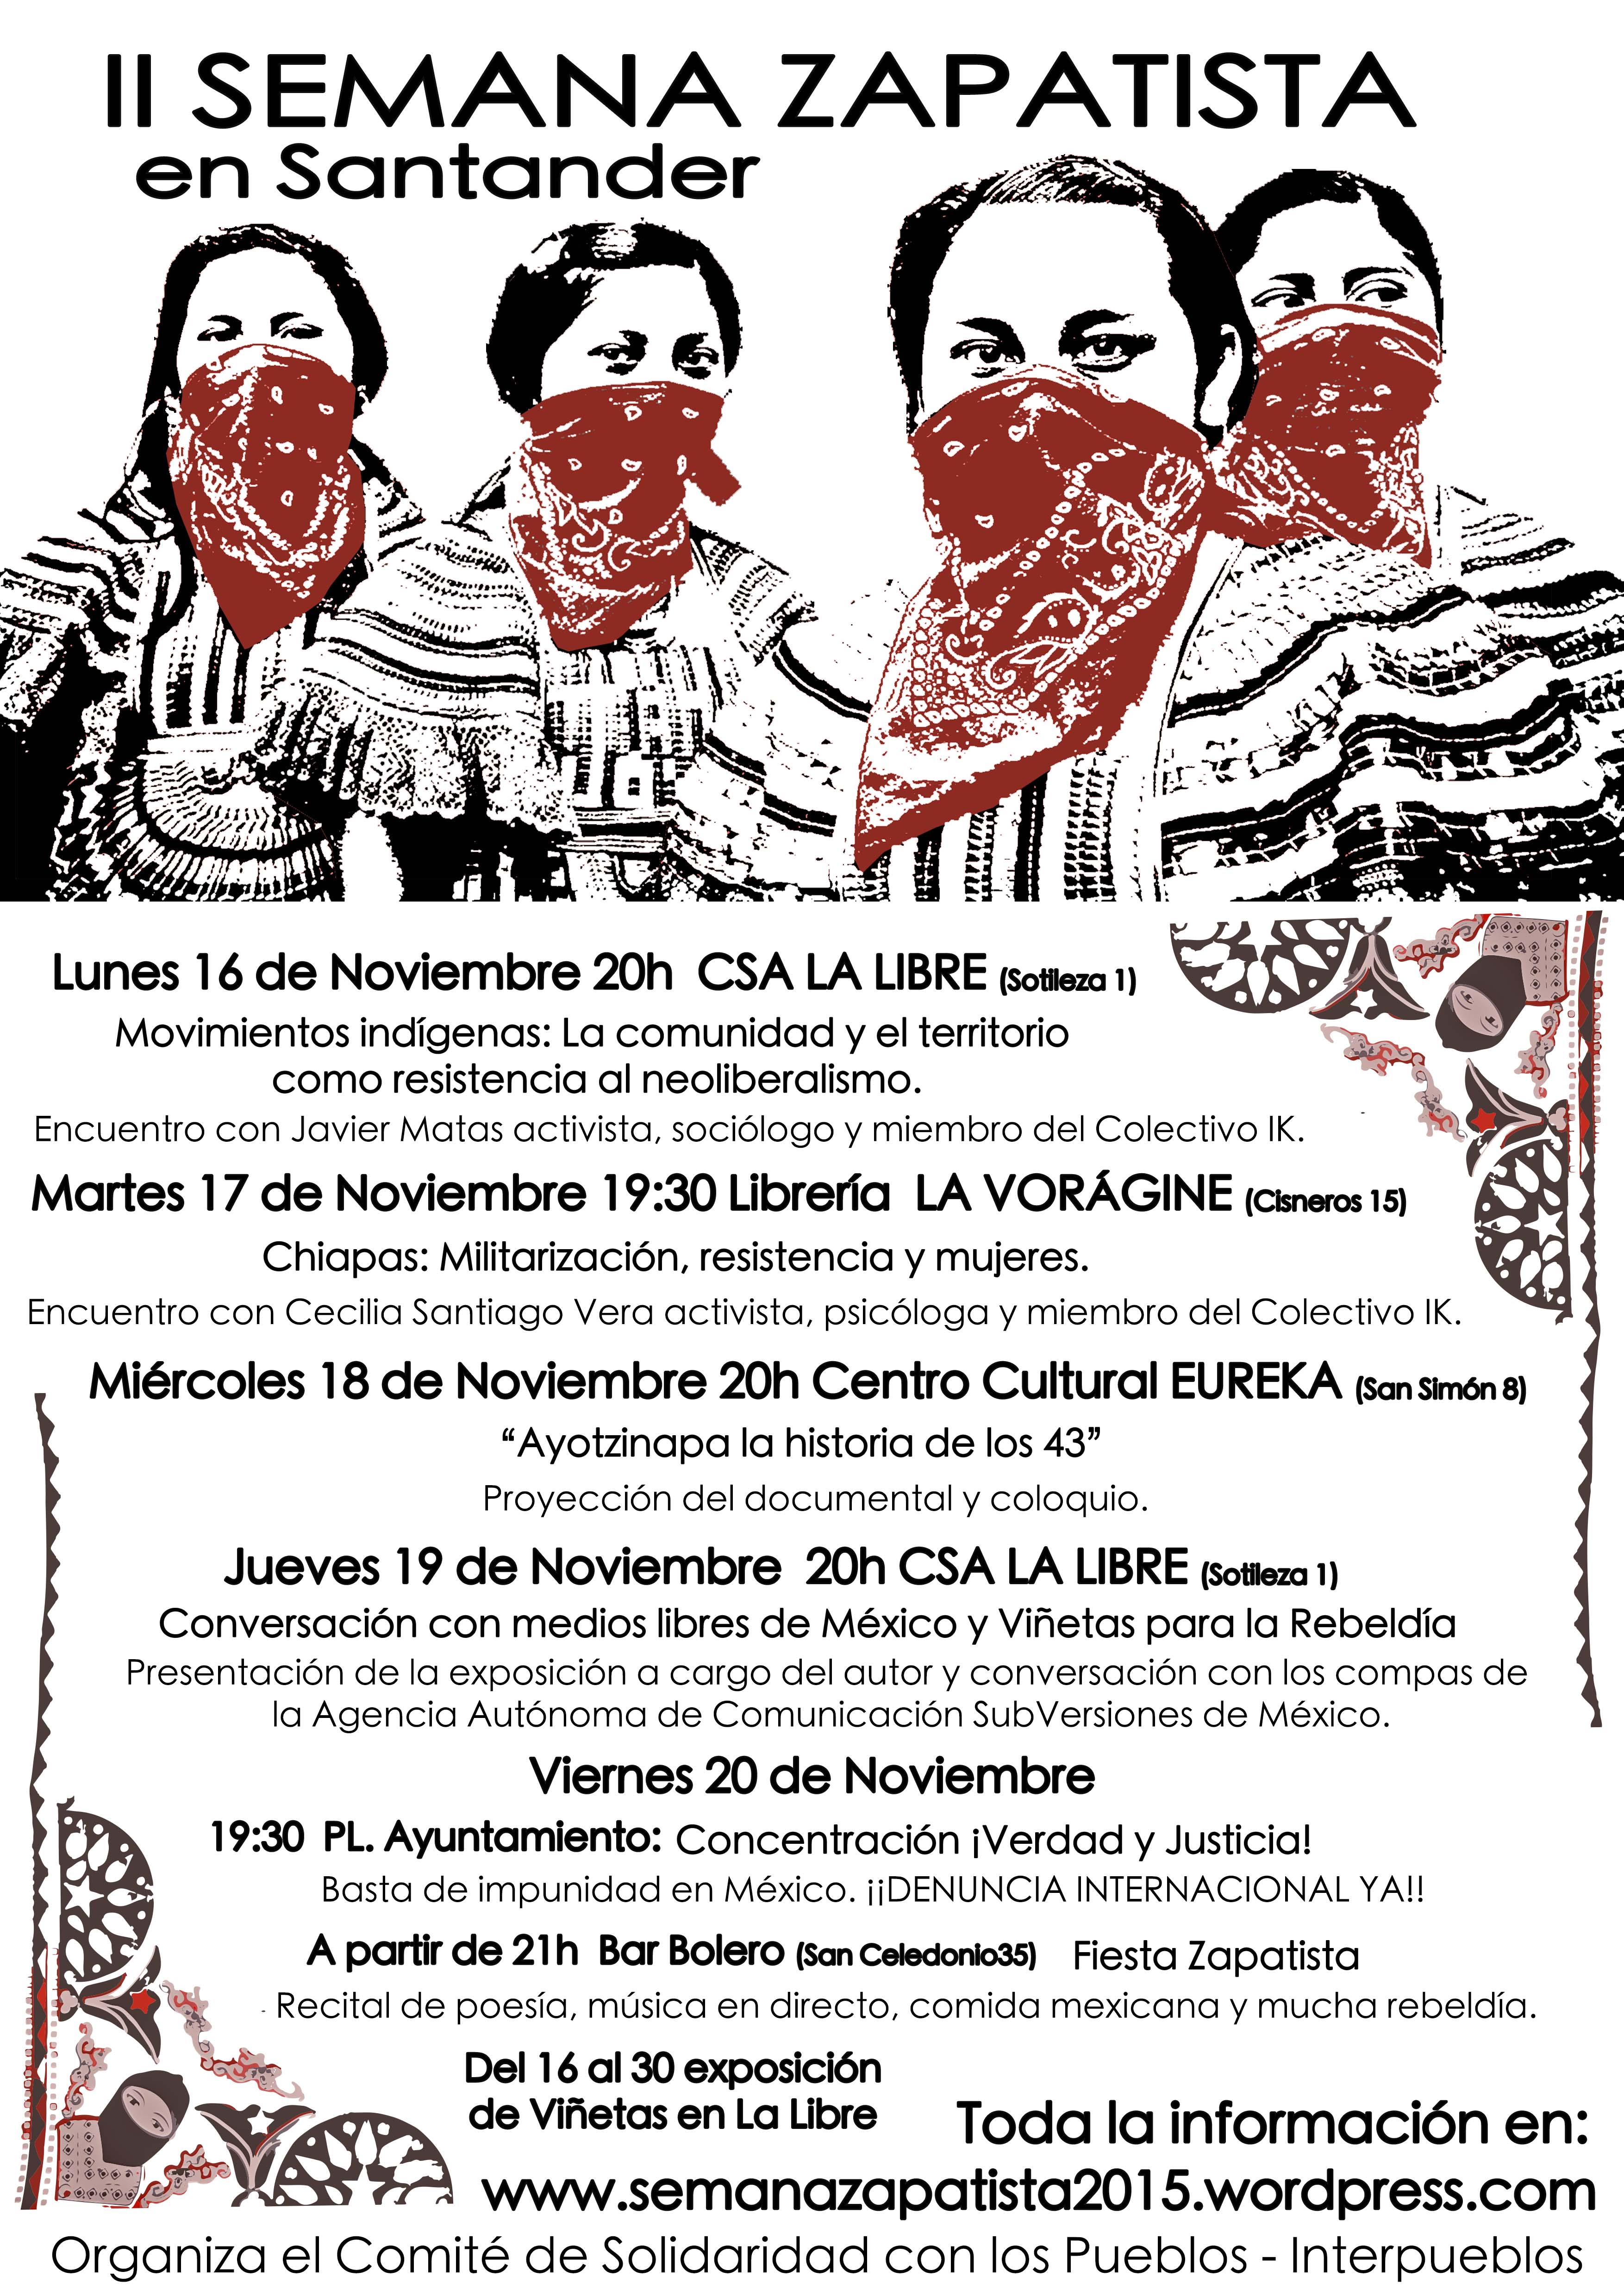 Actividades de la II Semana Zapatista